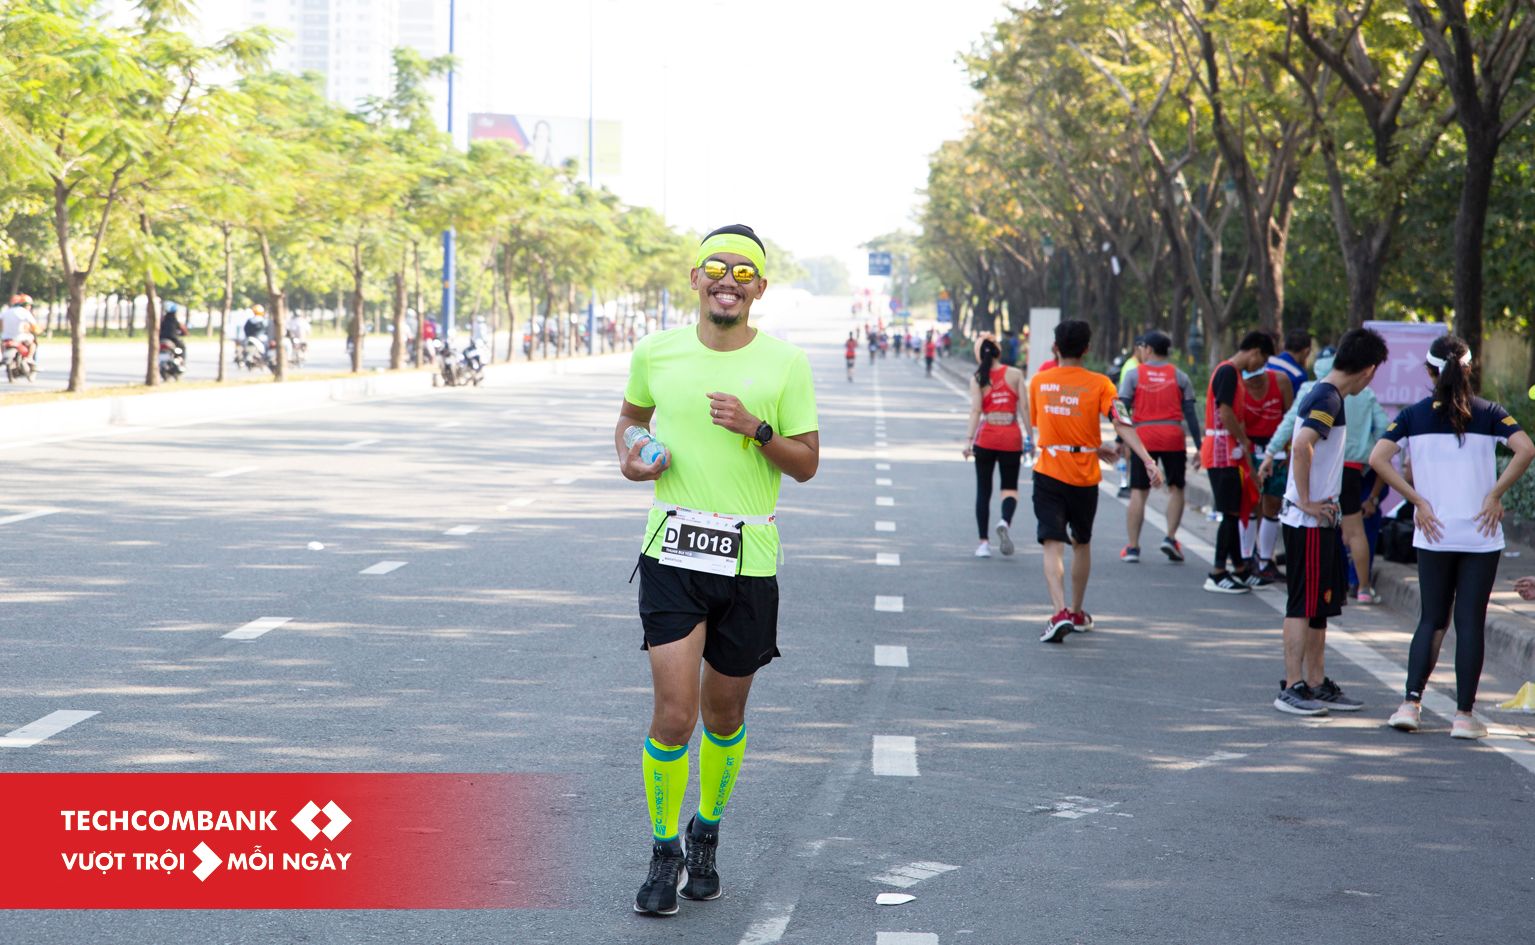 Kí sự HCMC International Marathon 2019 - Lần 2 chinh phục Full Marathon trên đường nhựa - ki su hcmc marathon 2019 5